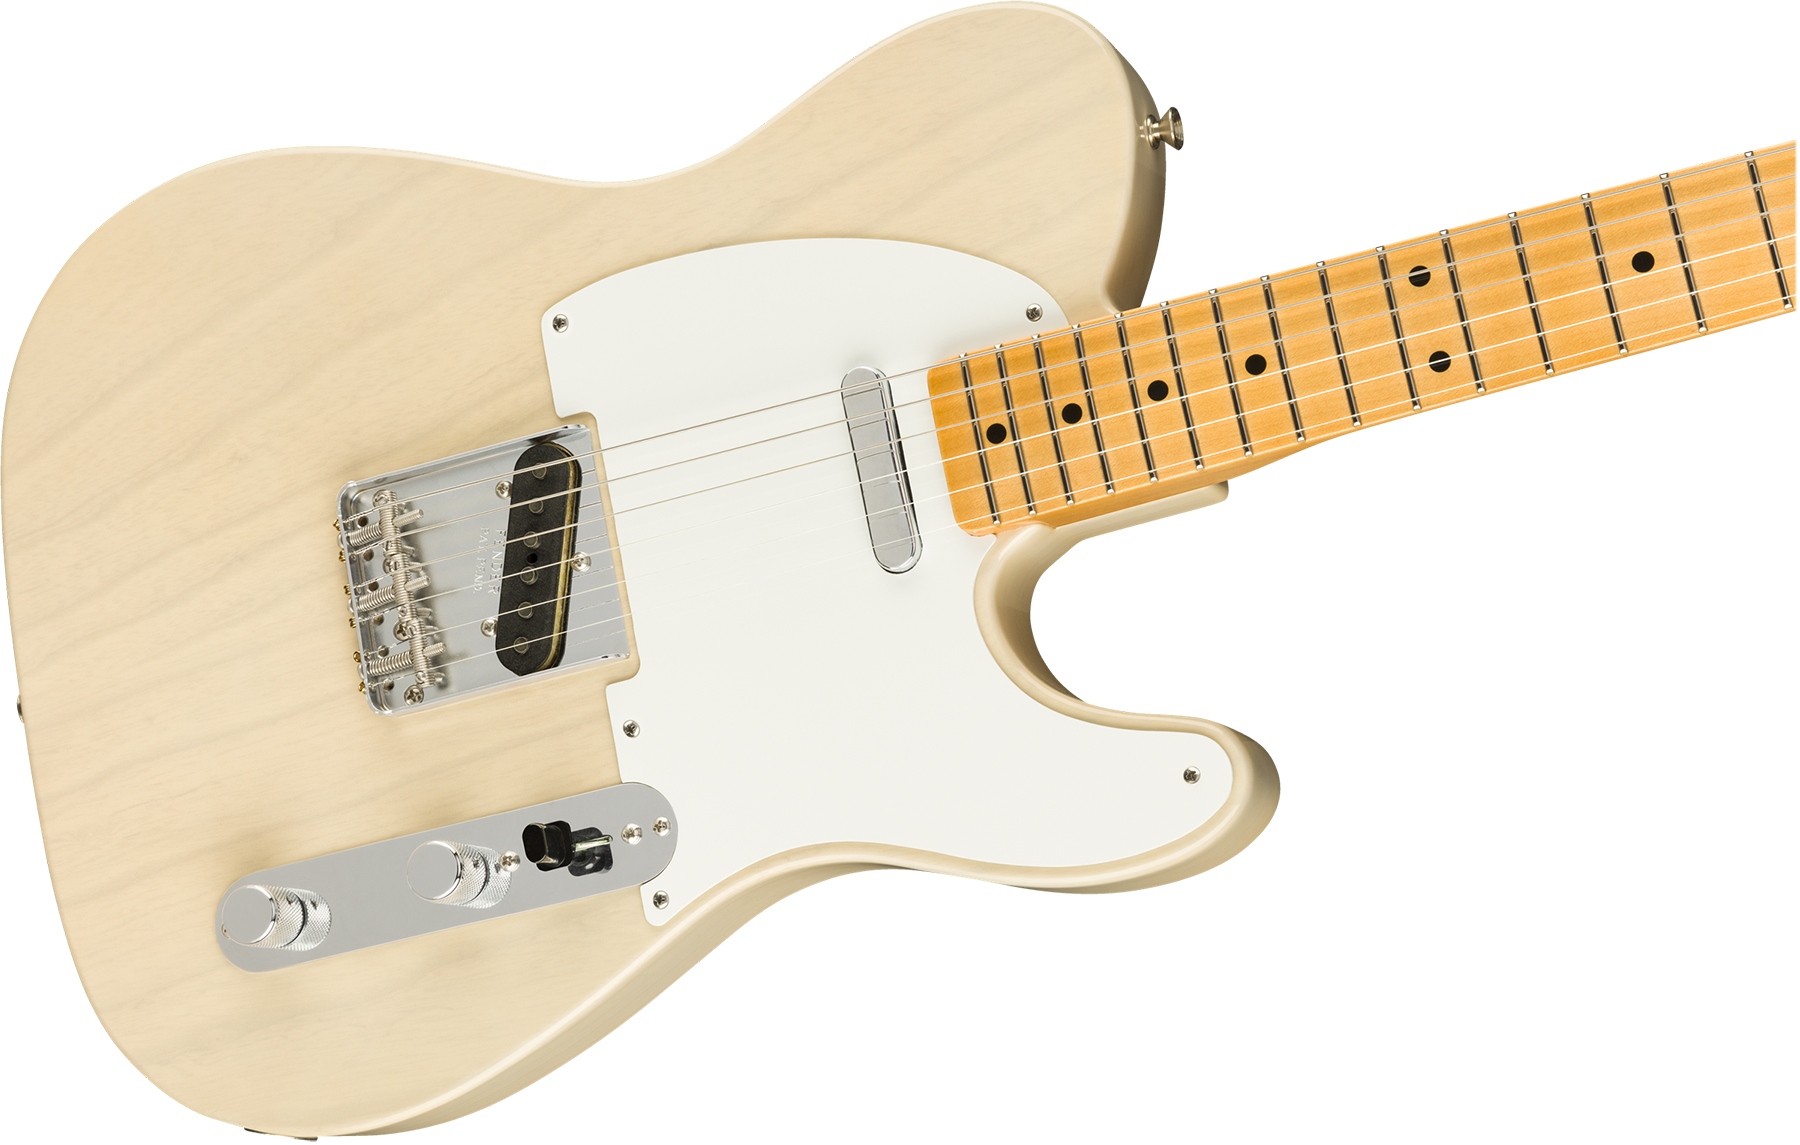 Fender Custom Shop Tele Vintage Custom 1958 Top Load Ltd Mn - Nos Aged White Blonde - Tel shape electric guitar - Variation 2